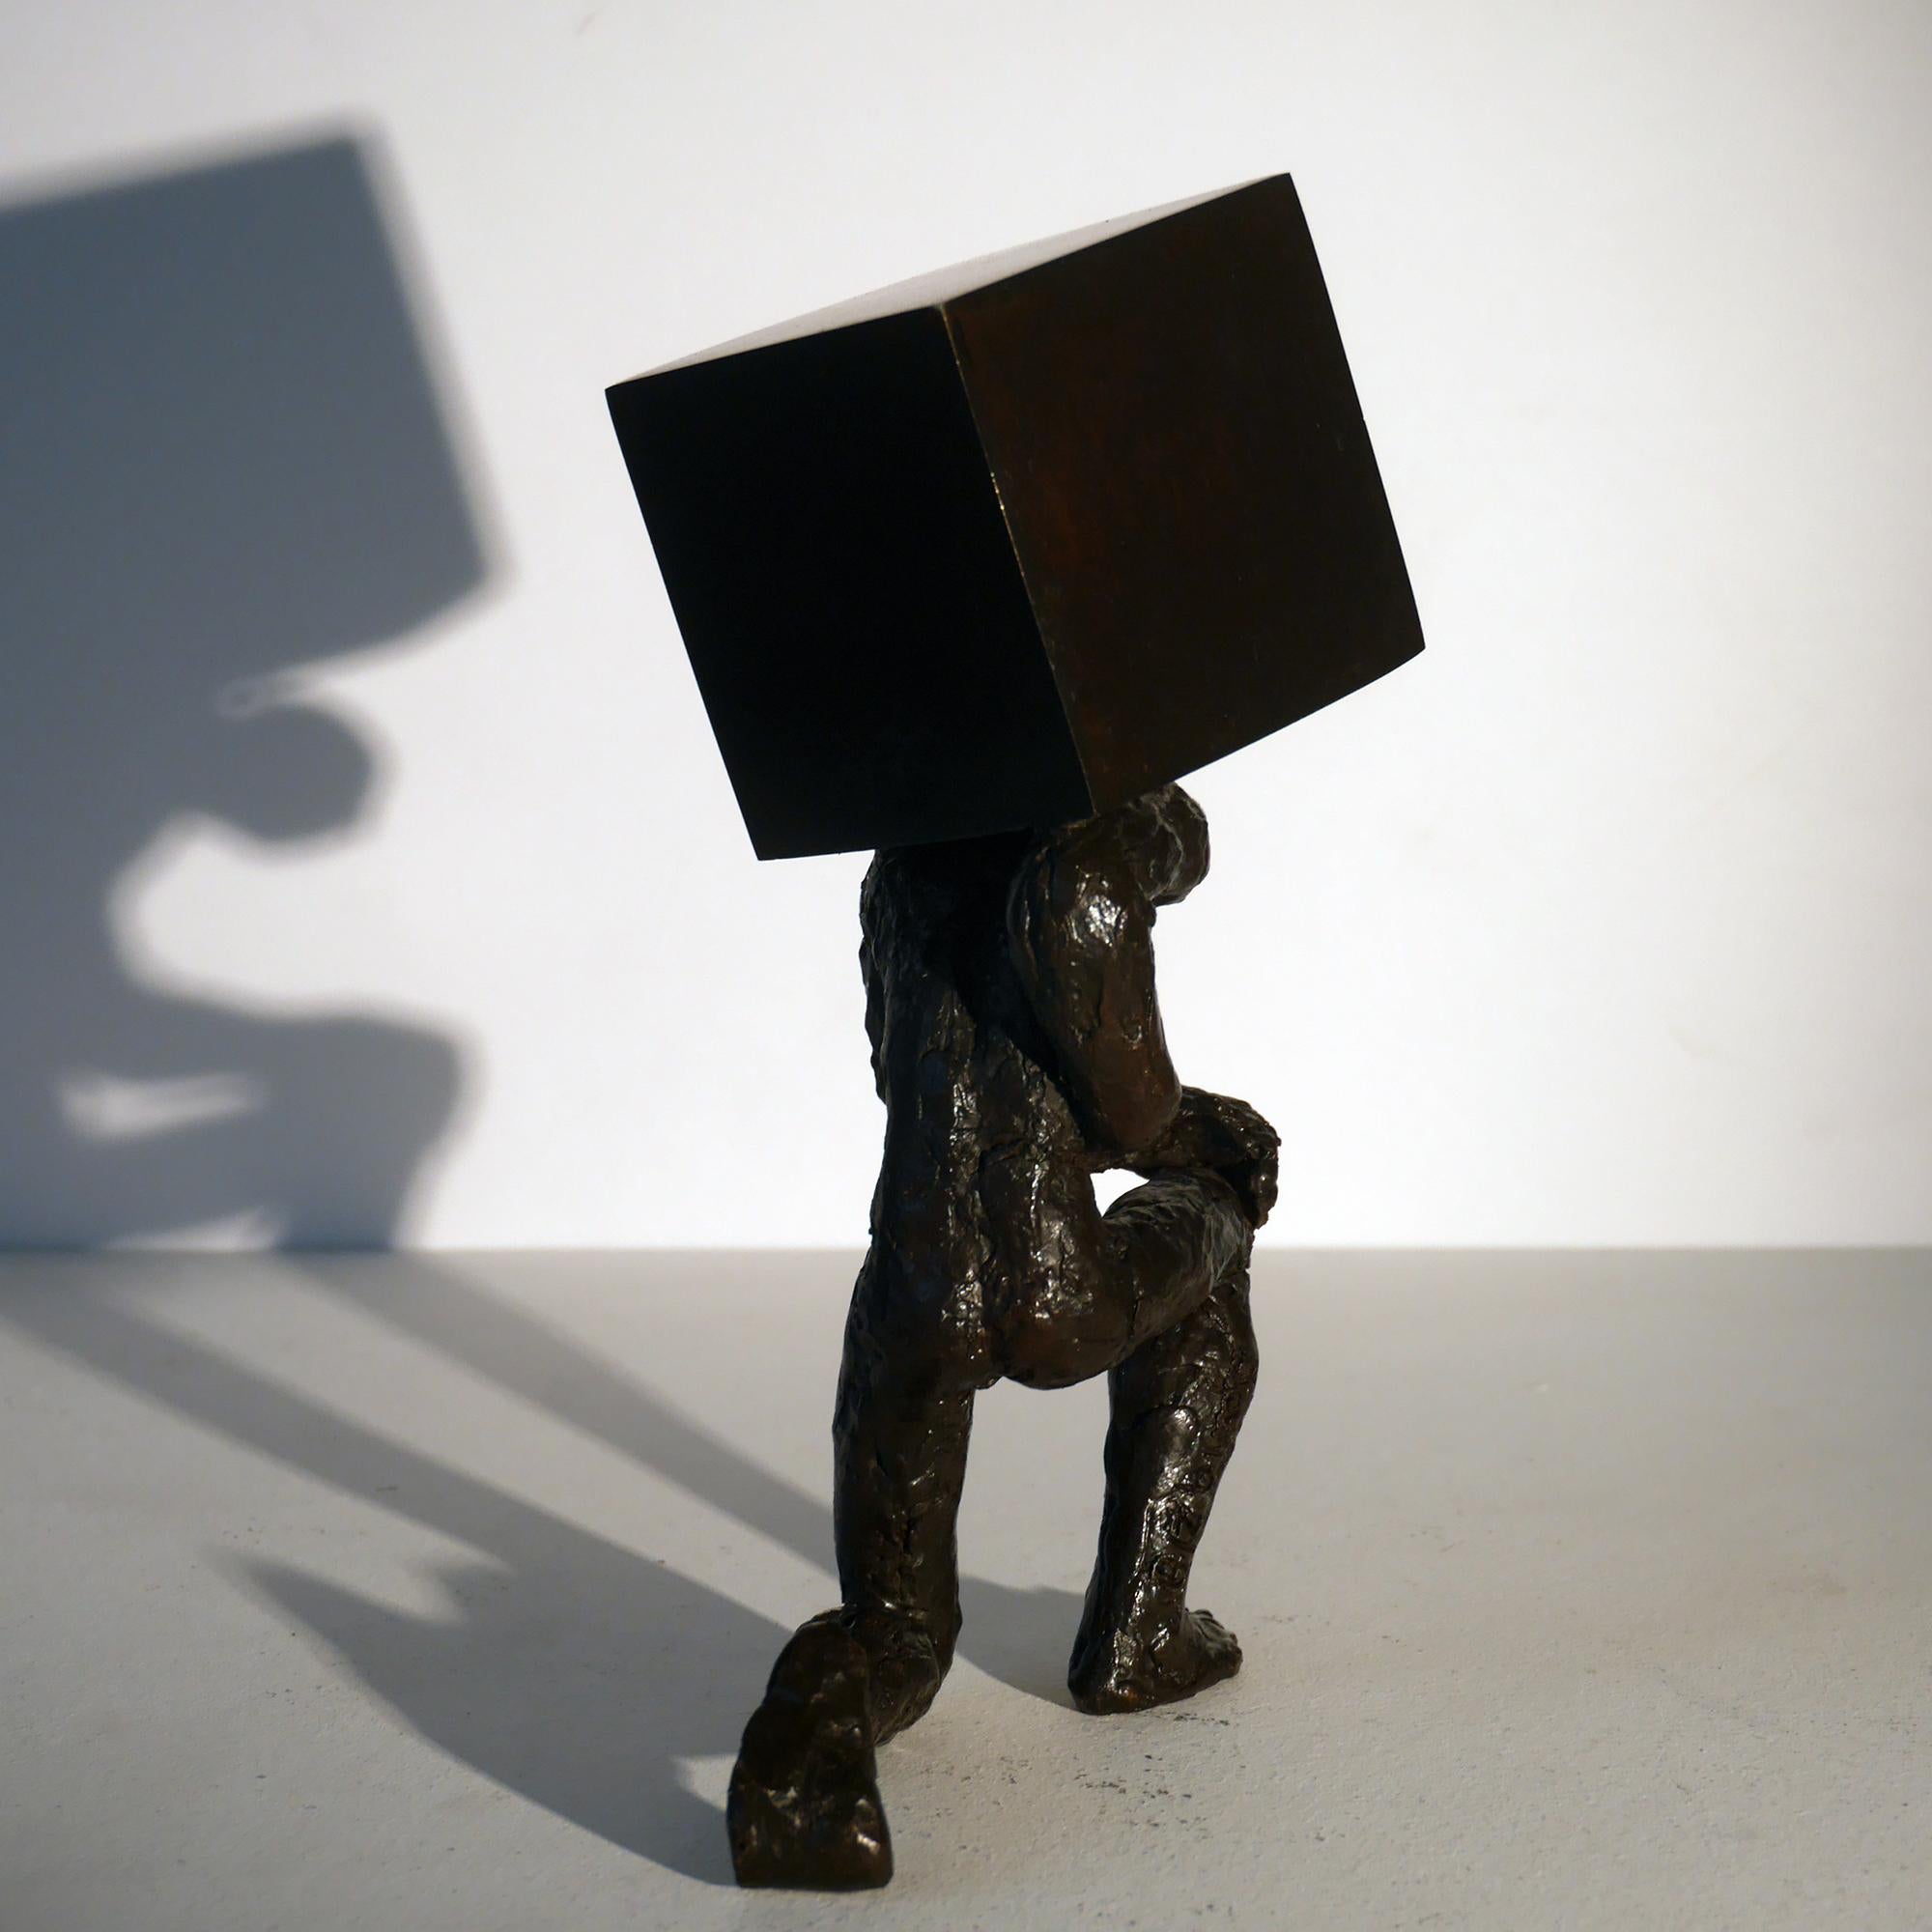 Le porteur de pierre bronze figurative sculpture, man holding a stone by M. Banq - Contemporary Sculpture by Maguy Banq